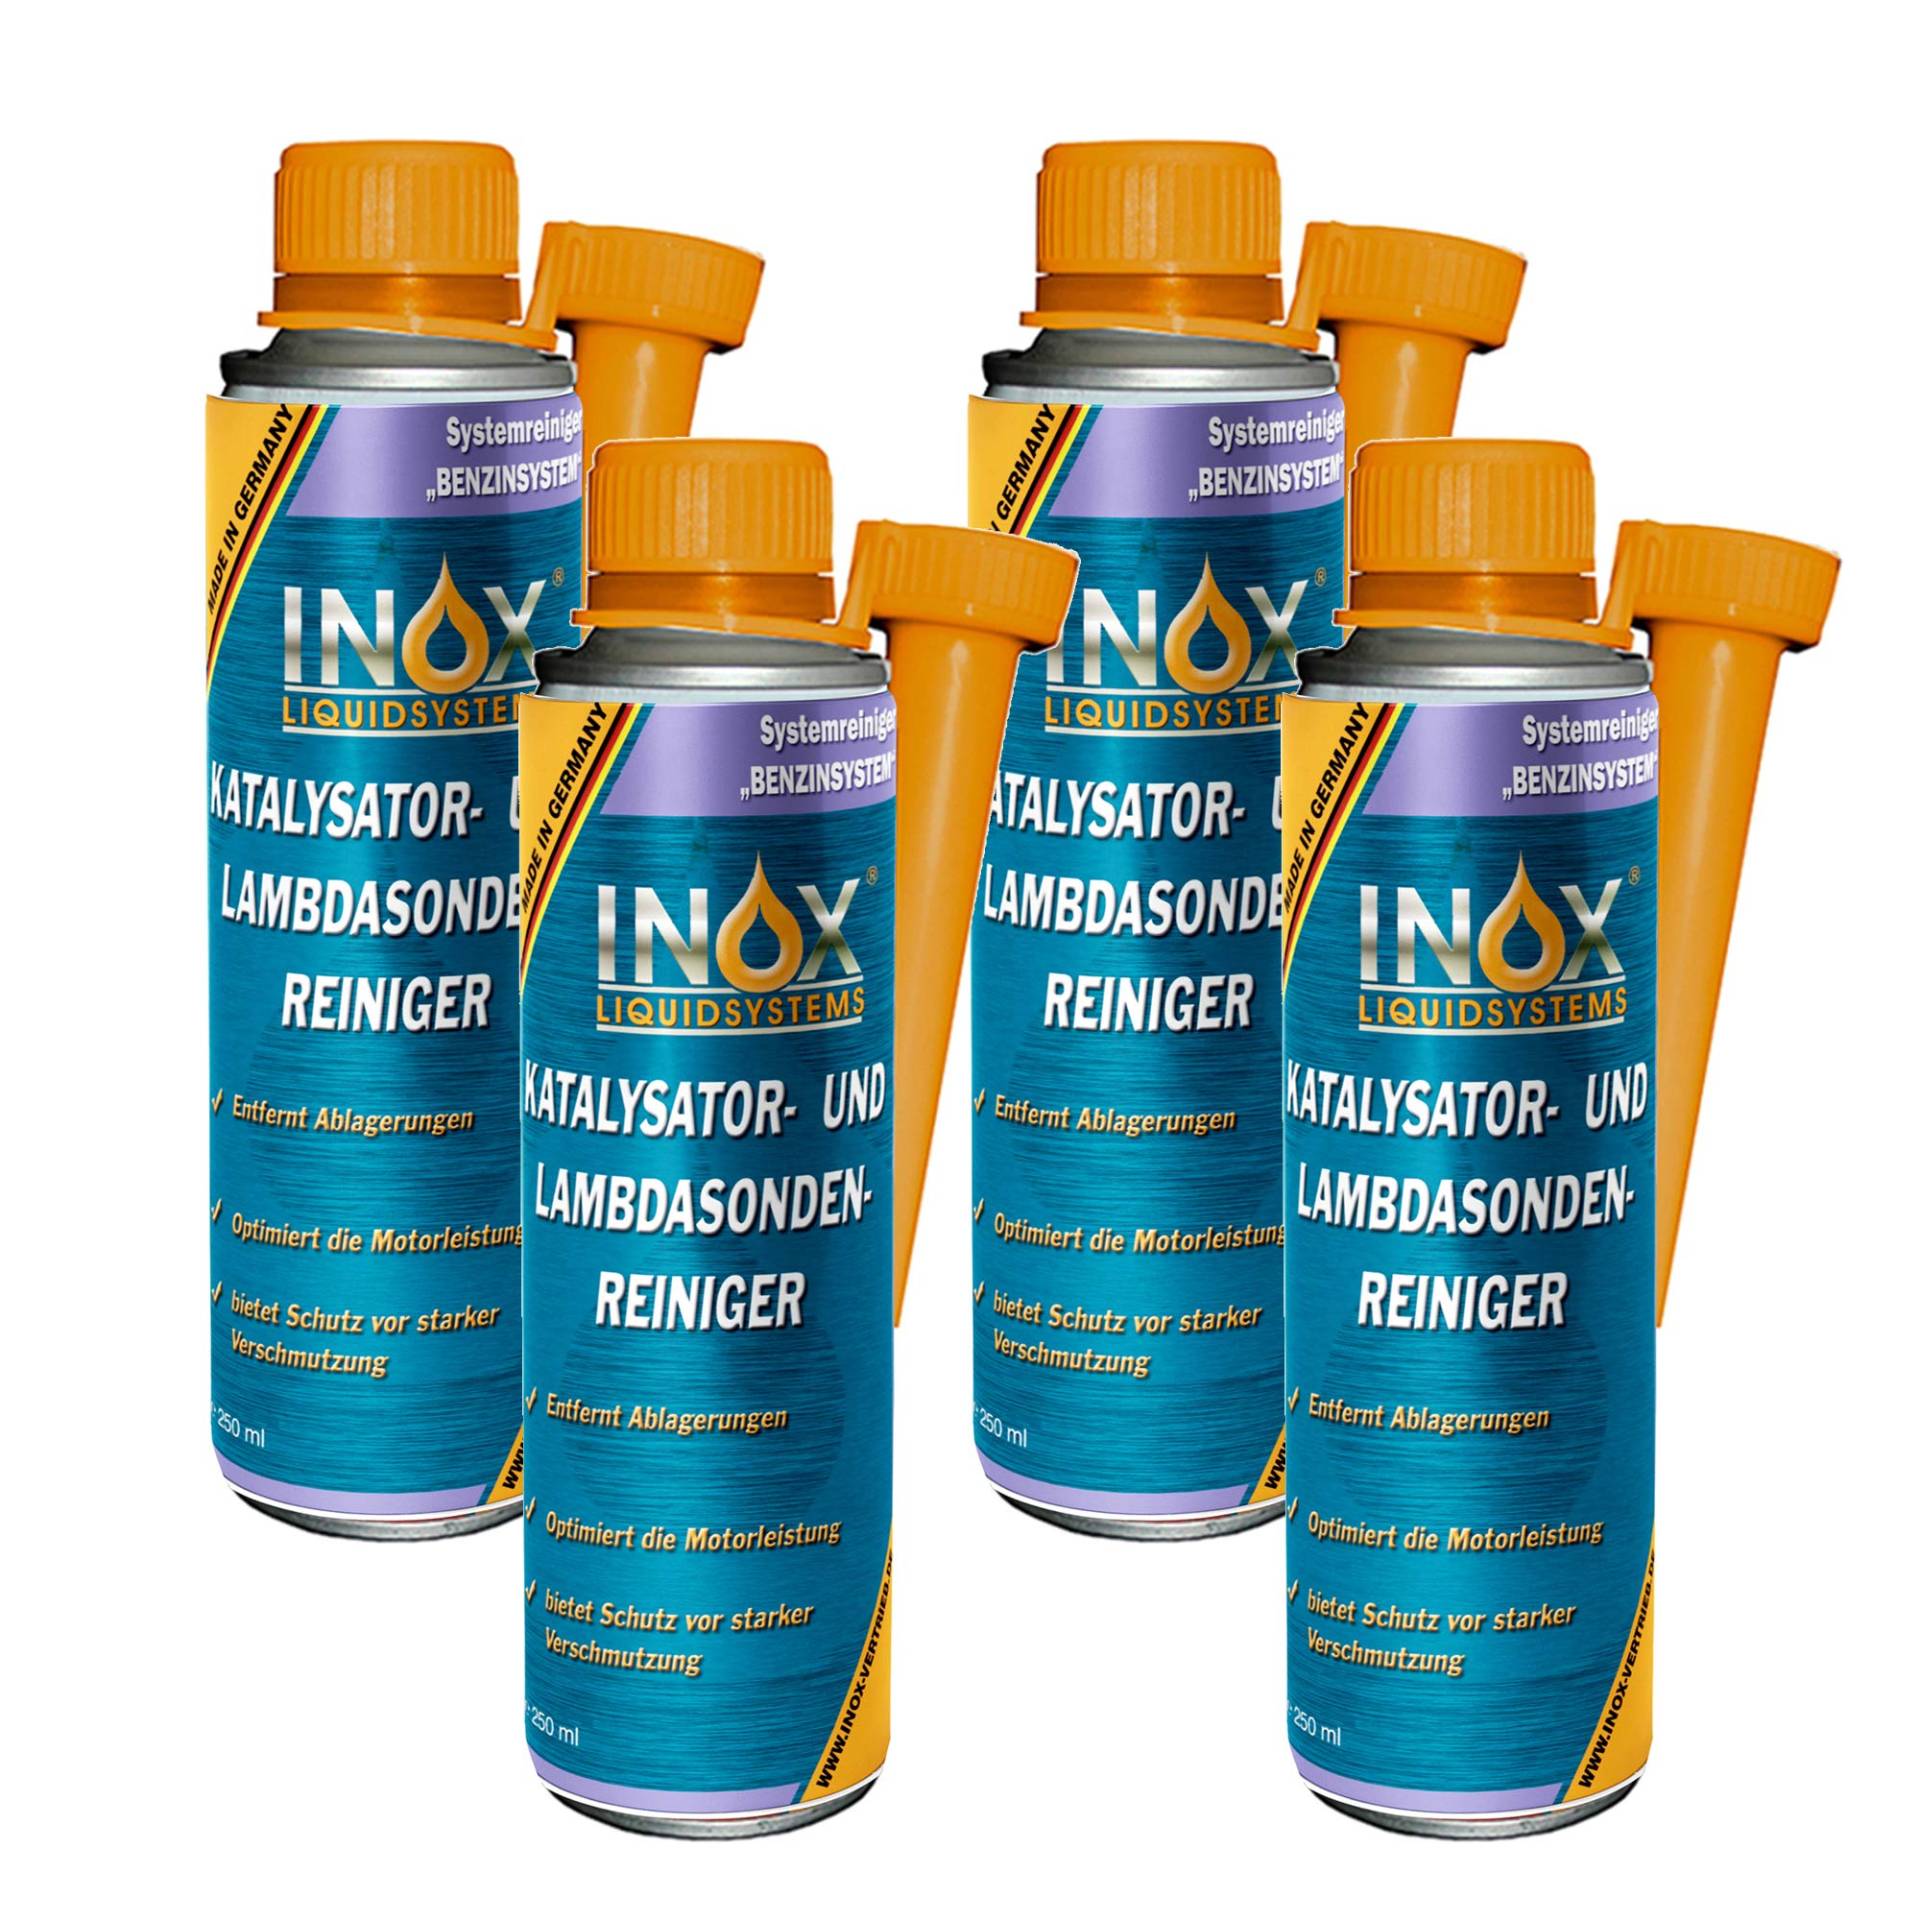 INOX® Katalysator- und Lambdasondenreiniger, 4 x 250 ml von INOX-LIQUIDSYSTEMS